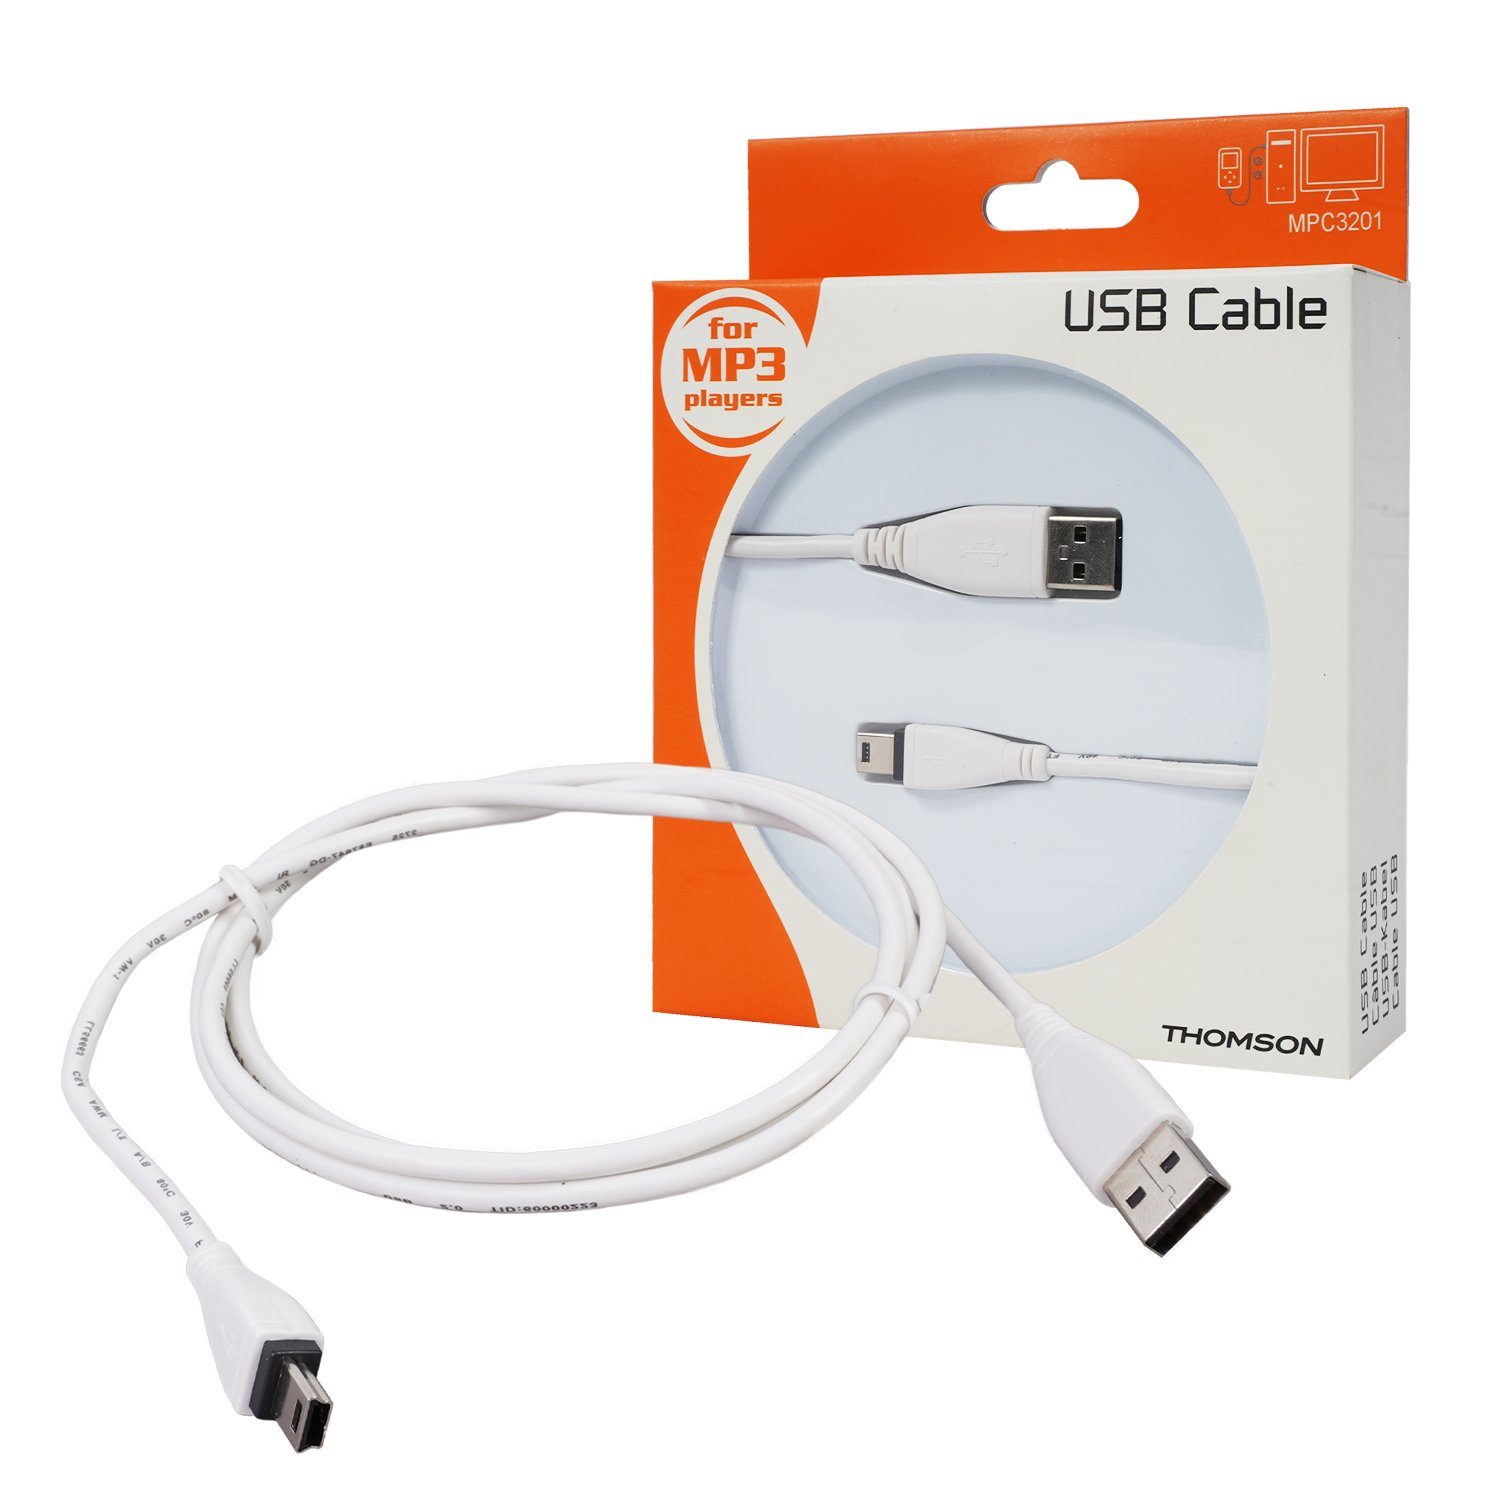 Thomson Navigationstasche Mini-USB B-Stecker USB-Kabel 1,2m Weiß, USB 2.0  Anschluss-Kabel mit Mini-B-Stecker, passend für PC, Notebook, Laptop,  Tablet, Handy, Smartphone, Navi, MP3-Player etc.